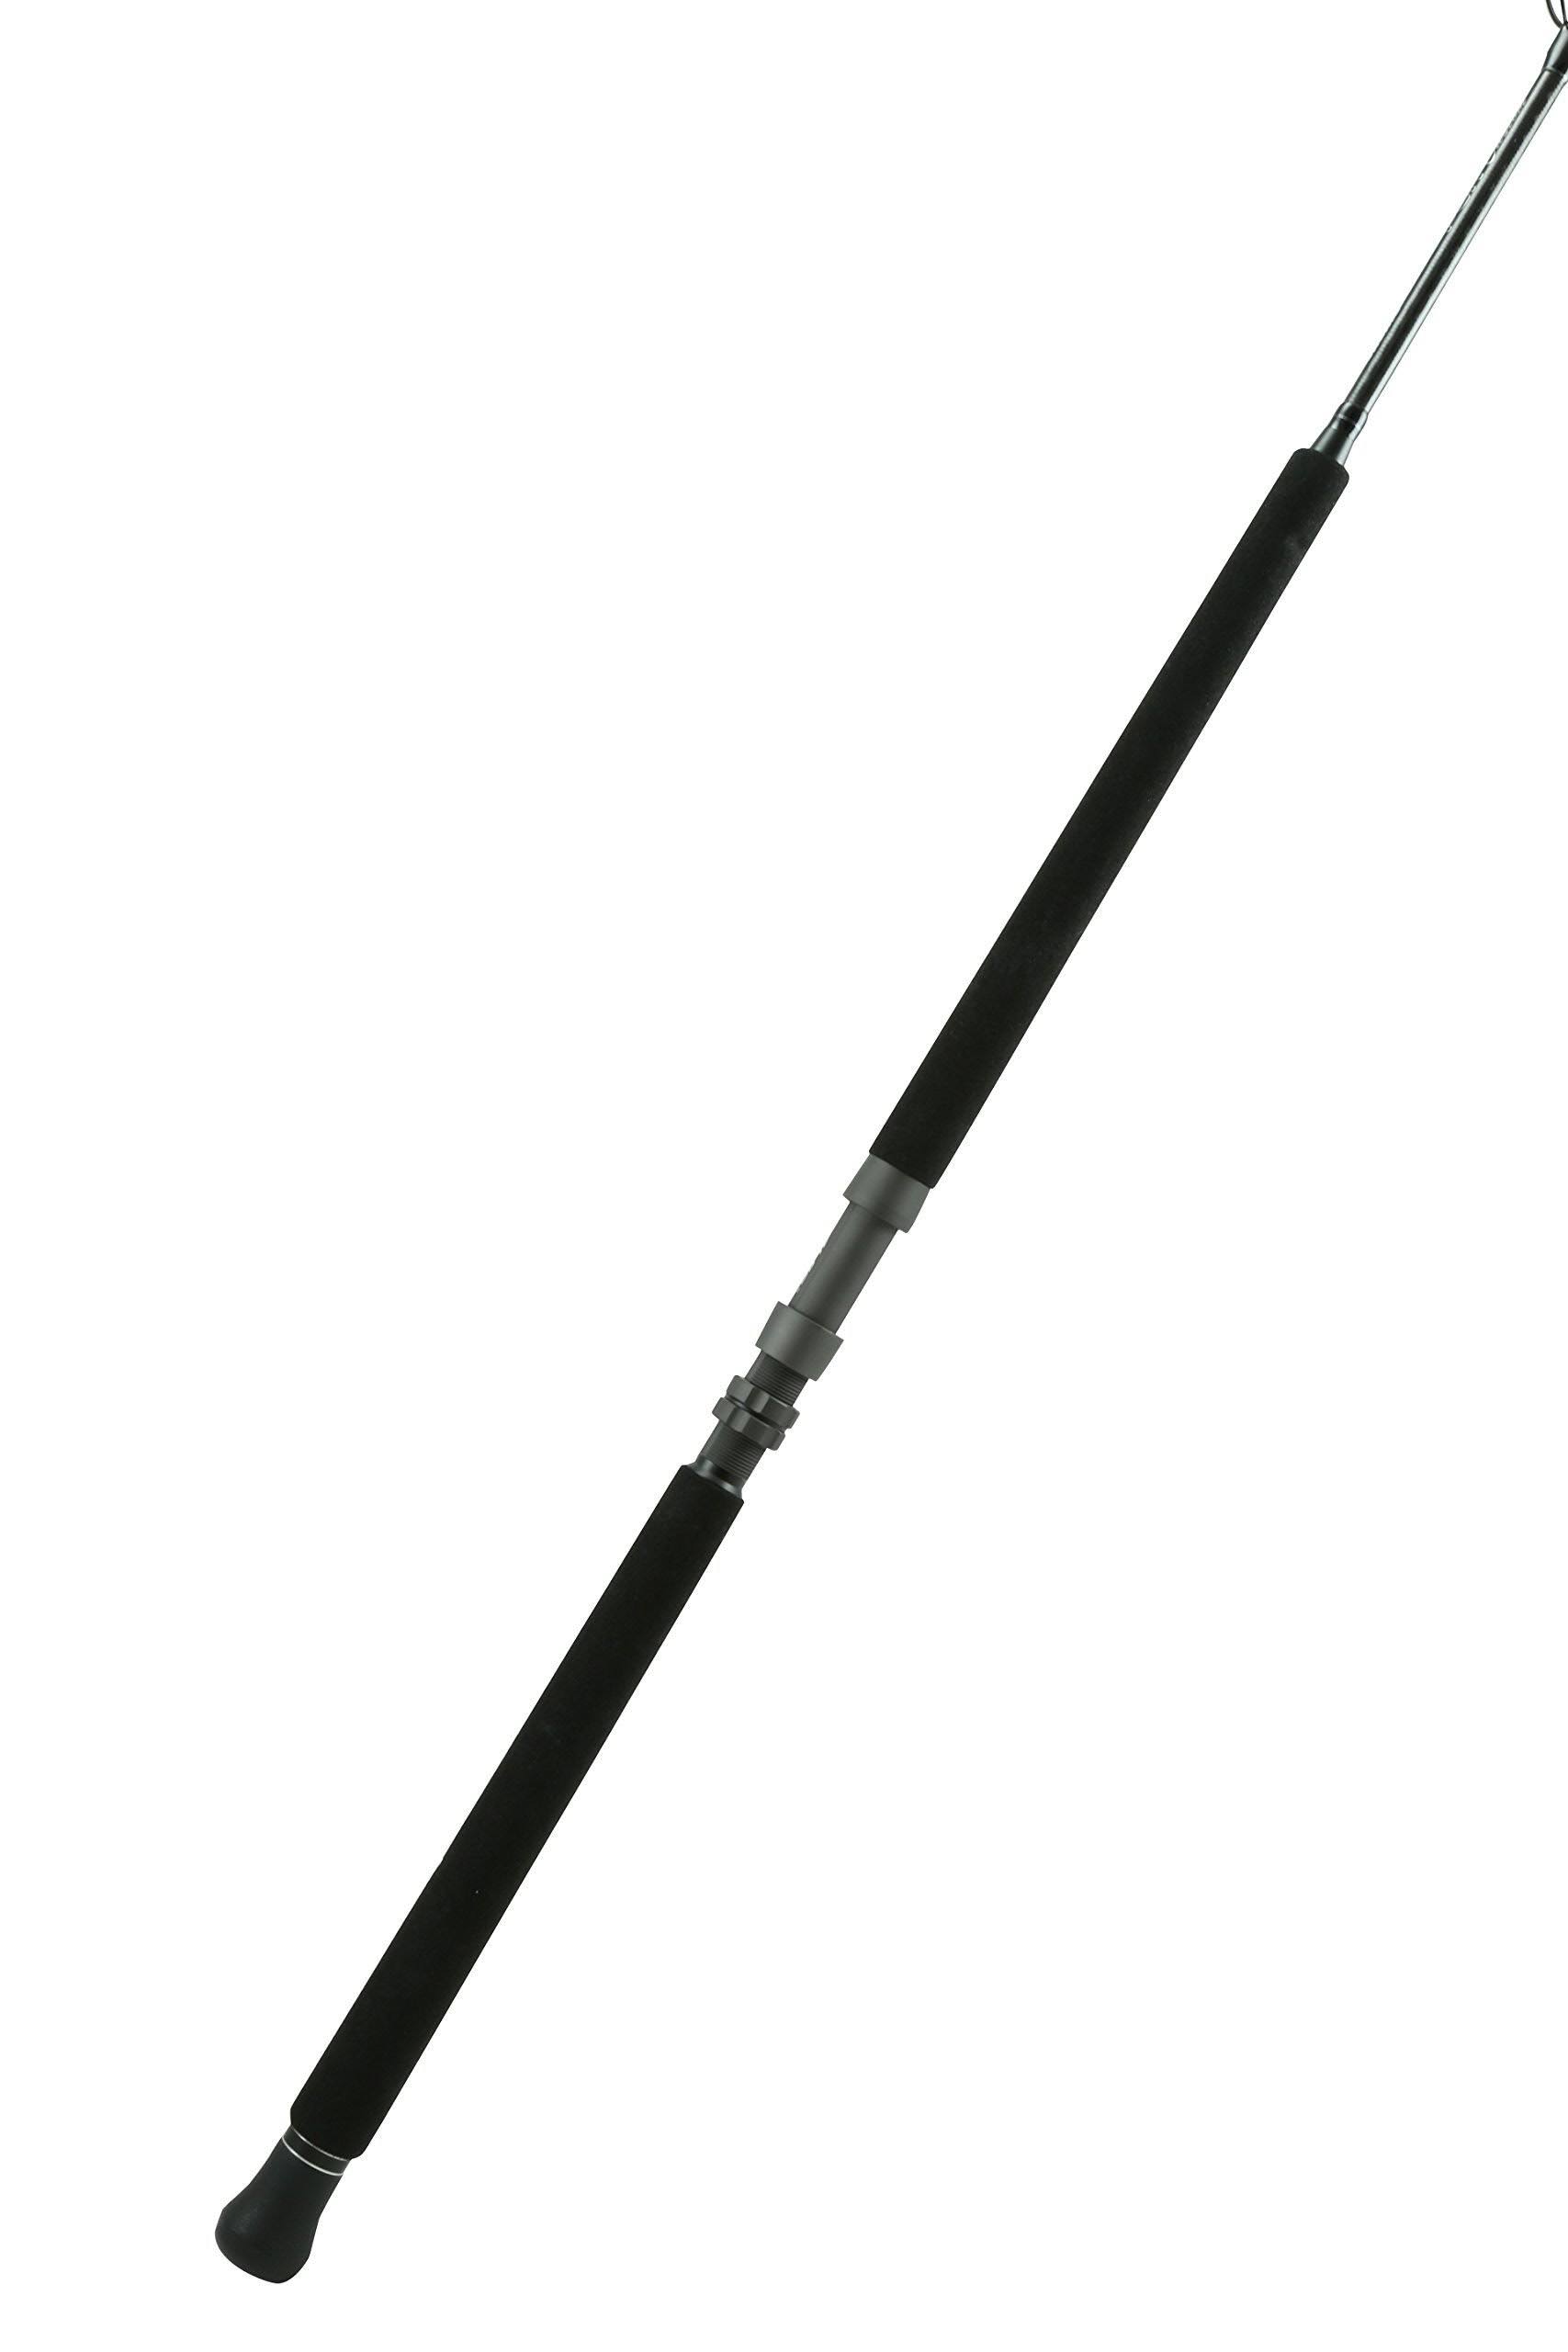 Okuma PCH Custom Rod 7' 0" XH 1-pcs 30-60 lbs